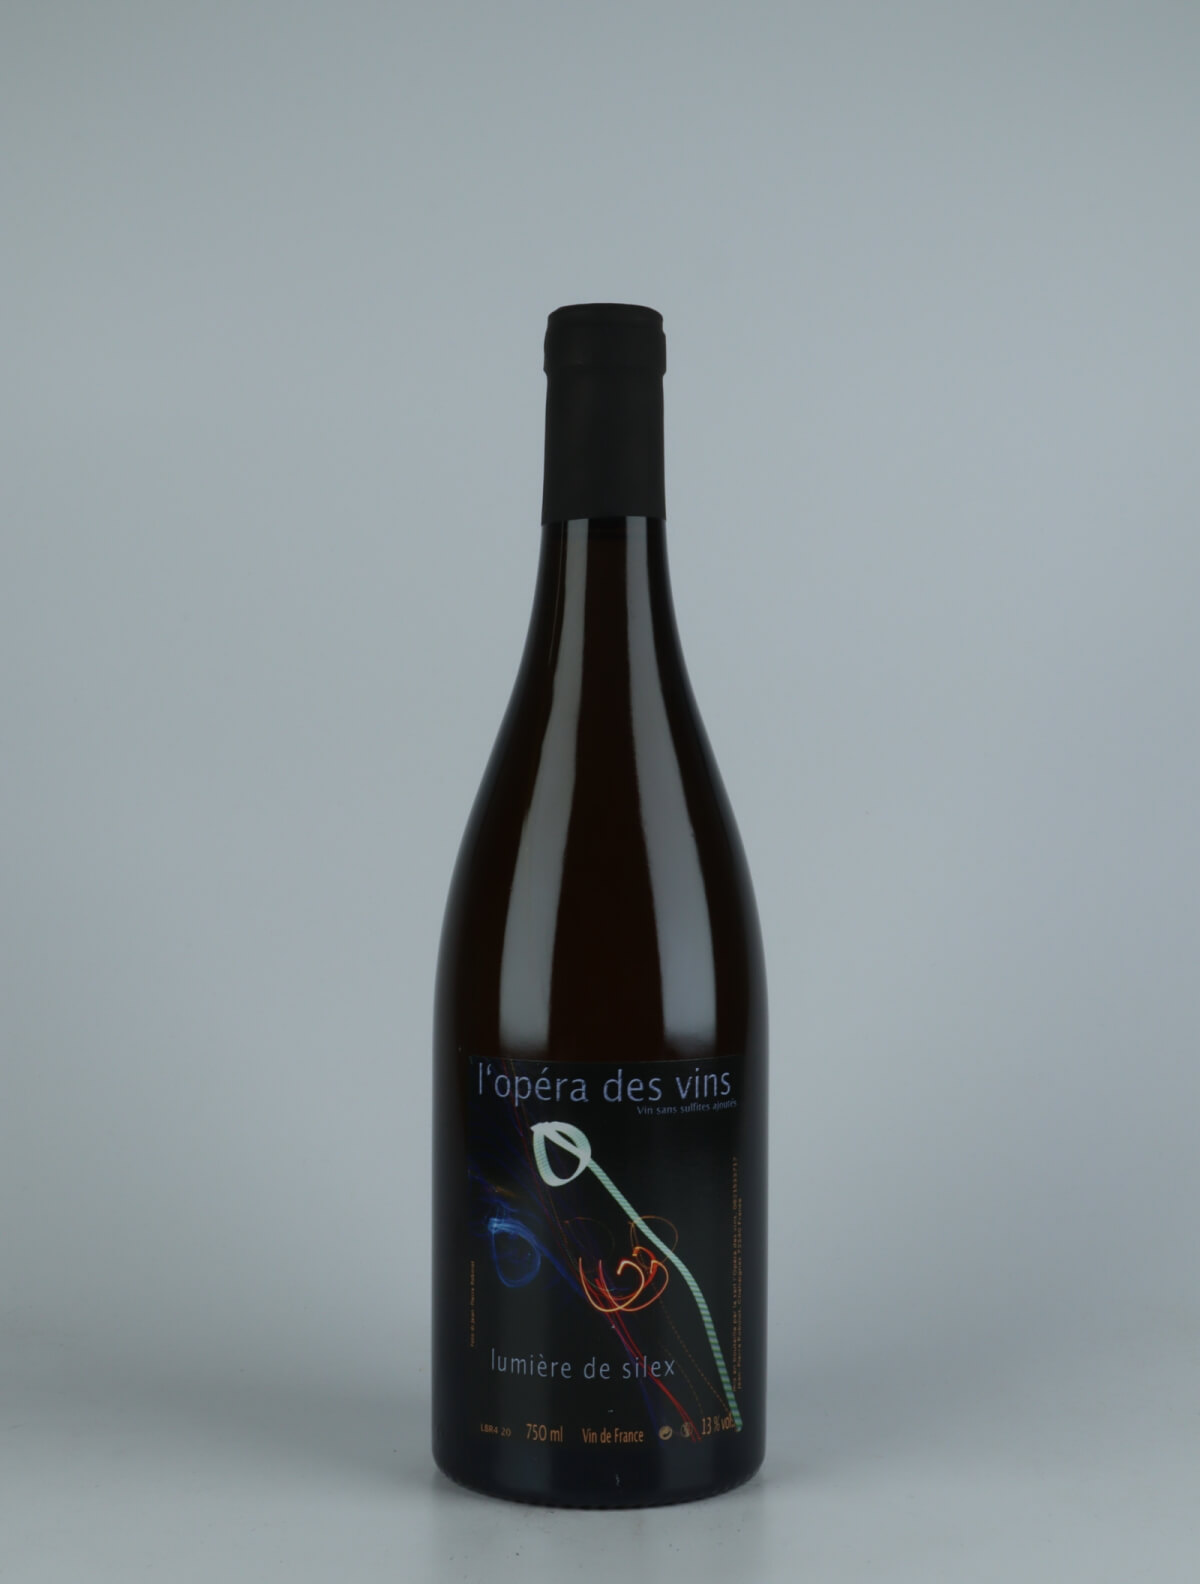 A bottle 2020 Lumière de Silex White wine from , Loire in France